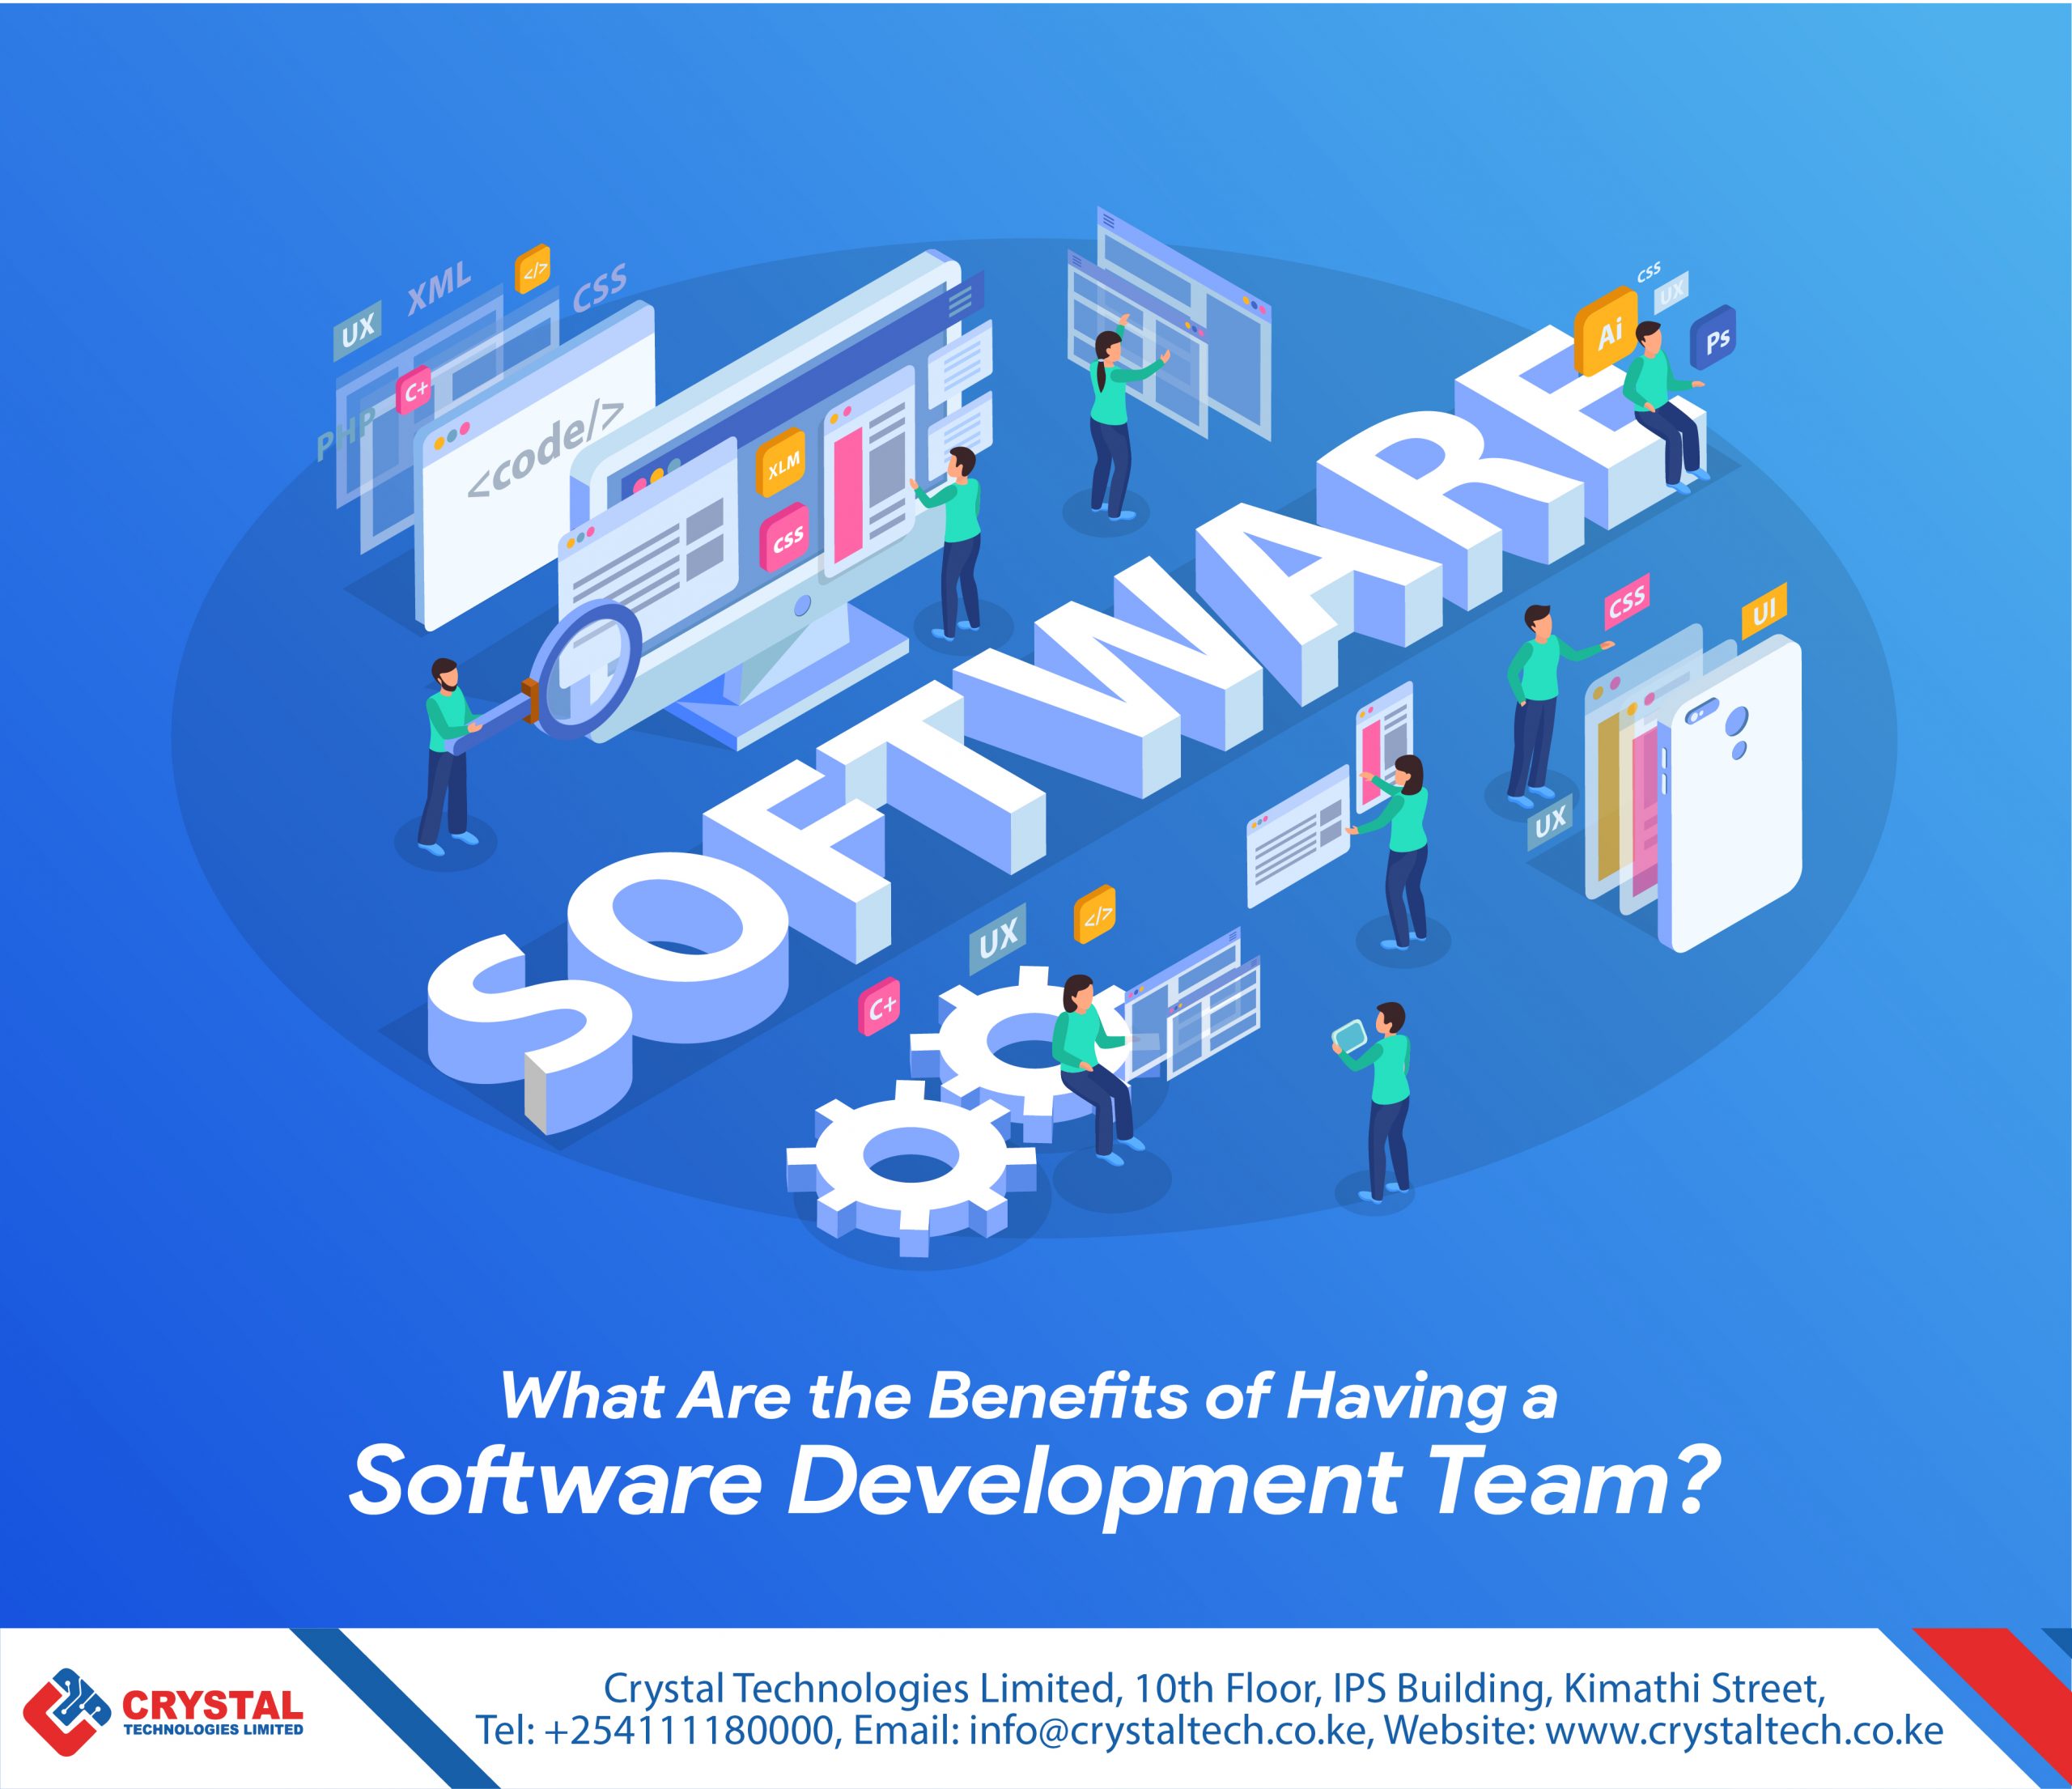 Benefits of a software development team